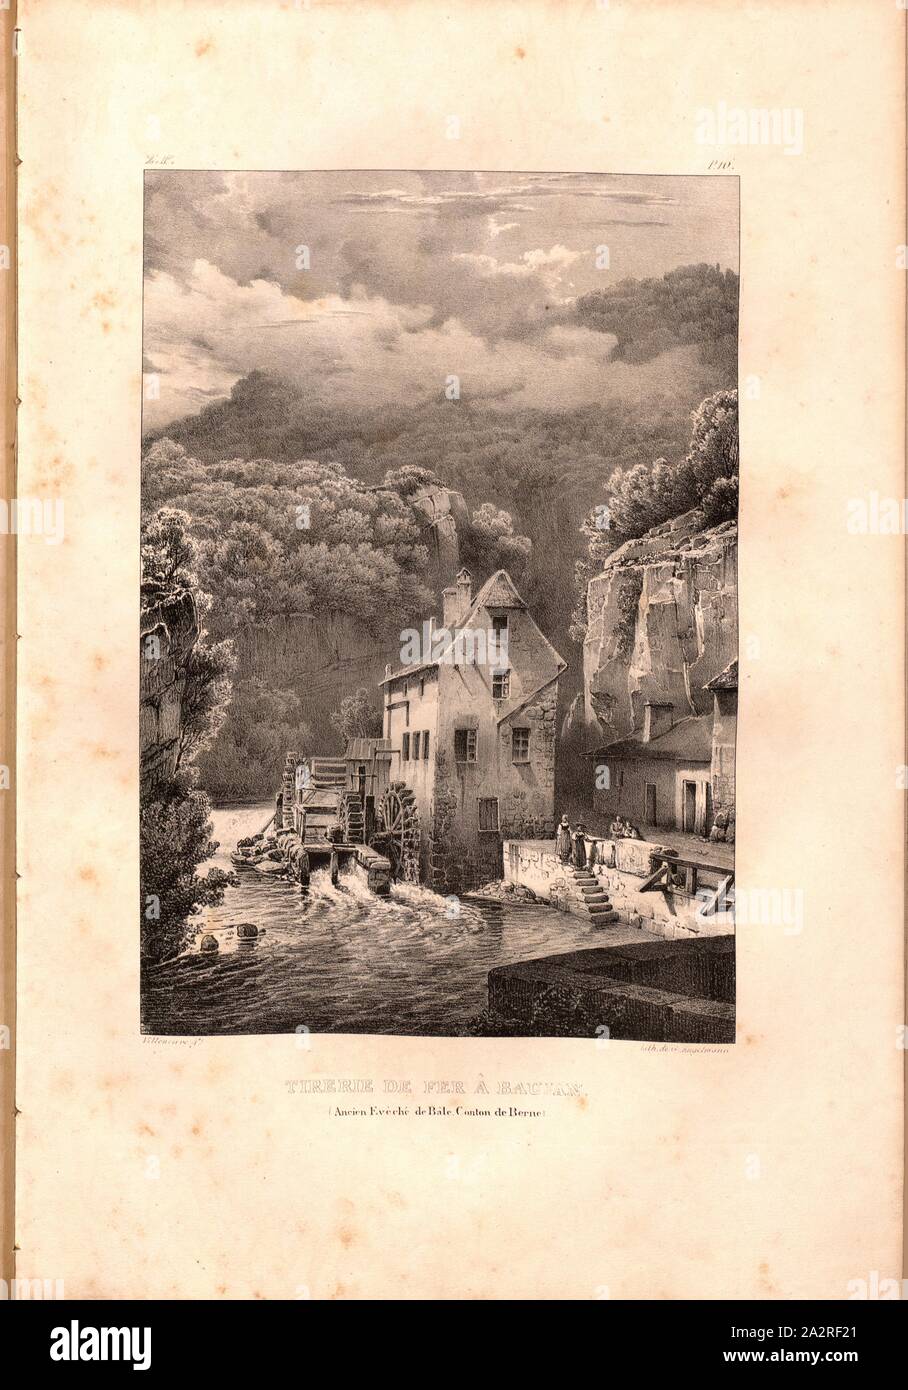 Iron Tirry at Baujan, View of a mill between Pierre Pertuis and Biel, signed: Villeneuve, G. Engelmann, lithograph, plate 16 (vol. 1, part 2), Villeneuve, M. (ft.); Engelmann, Godefroy (lith.), 1823, Hilaire Léon Sazerac, Godefroy Engelmann: Lettres sur la Suisse (...). Paris: [s.n.], 1823-1832 Stock Photo